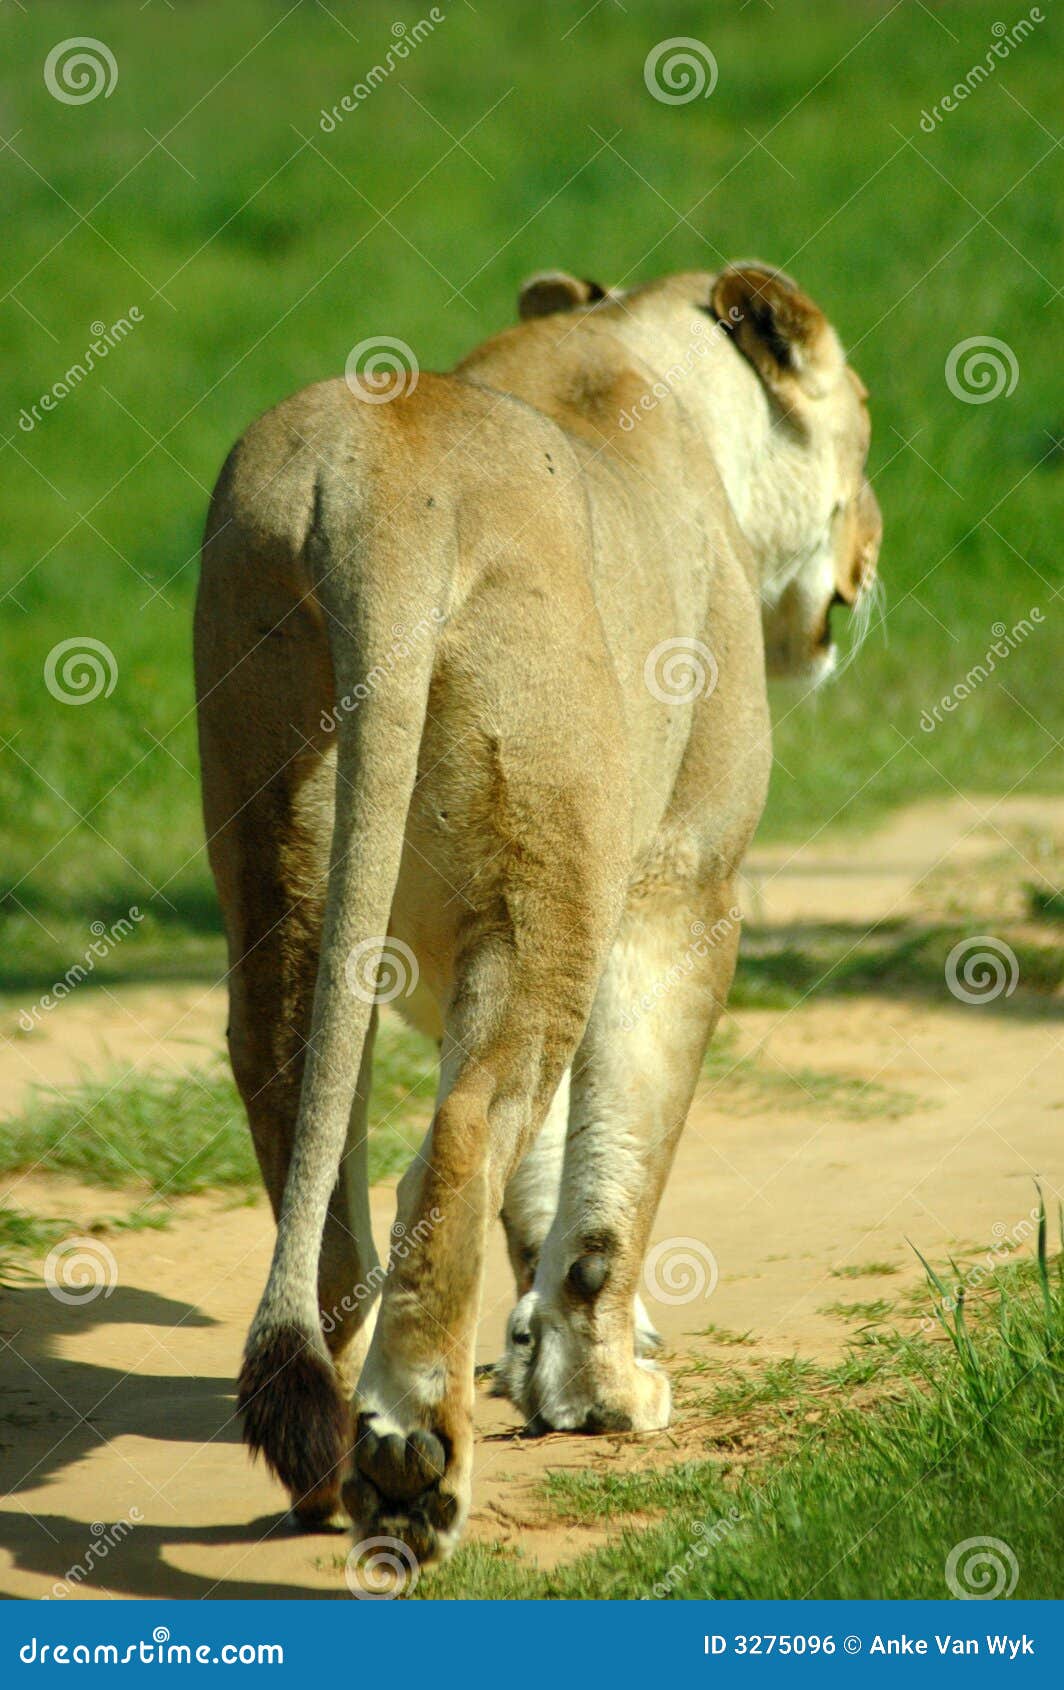 Lion walking away stock photo. Image of animals, animal - 3275096